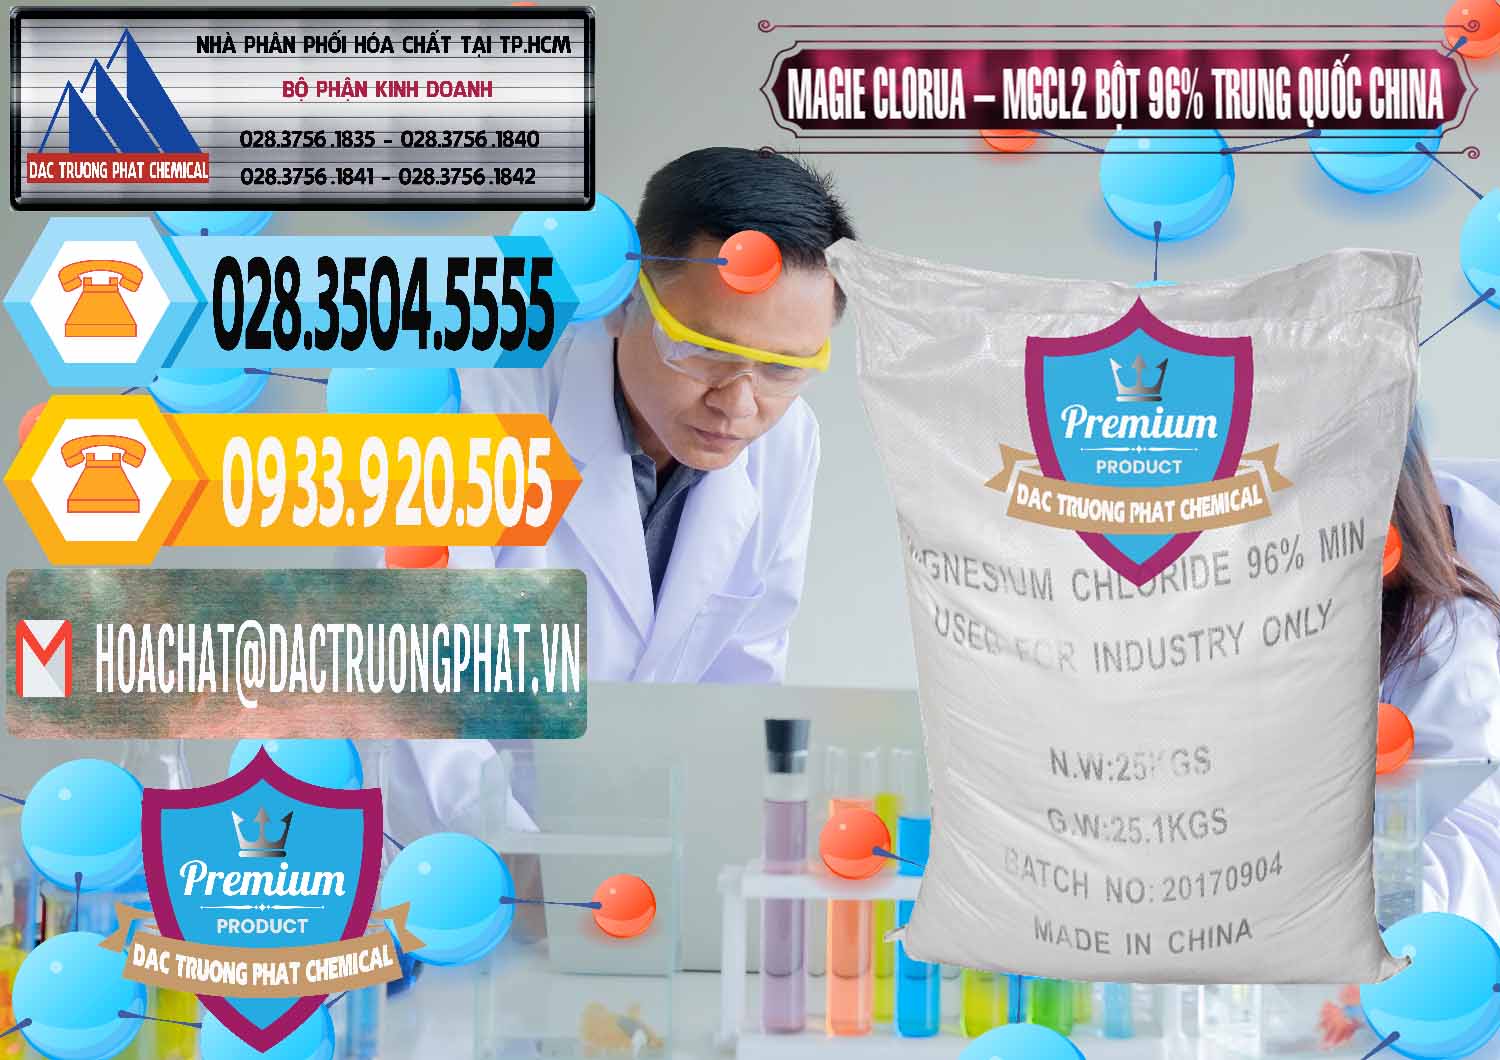 Cung cấp và bán Magie Clorua – MGCL2 96% Dạng Bột Bao Chữ Đen Trung Quốc China - 0205 - Nơi nhập khẩu _ cung cấp hóa chất tại TP.HCM - hoachattayrua.net